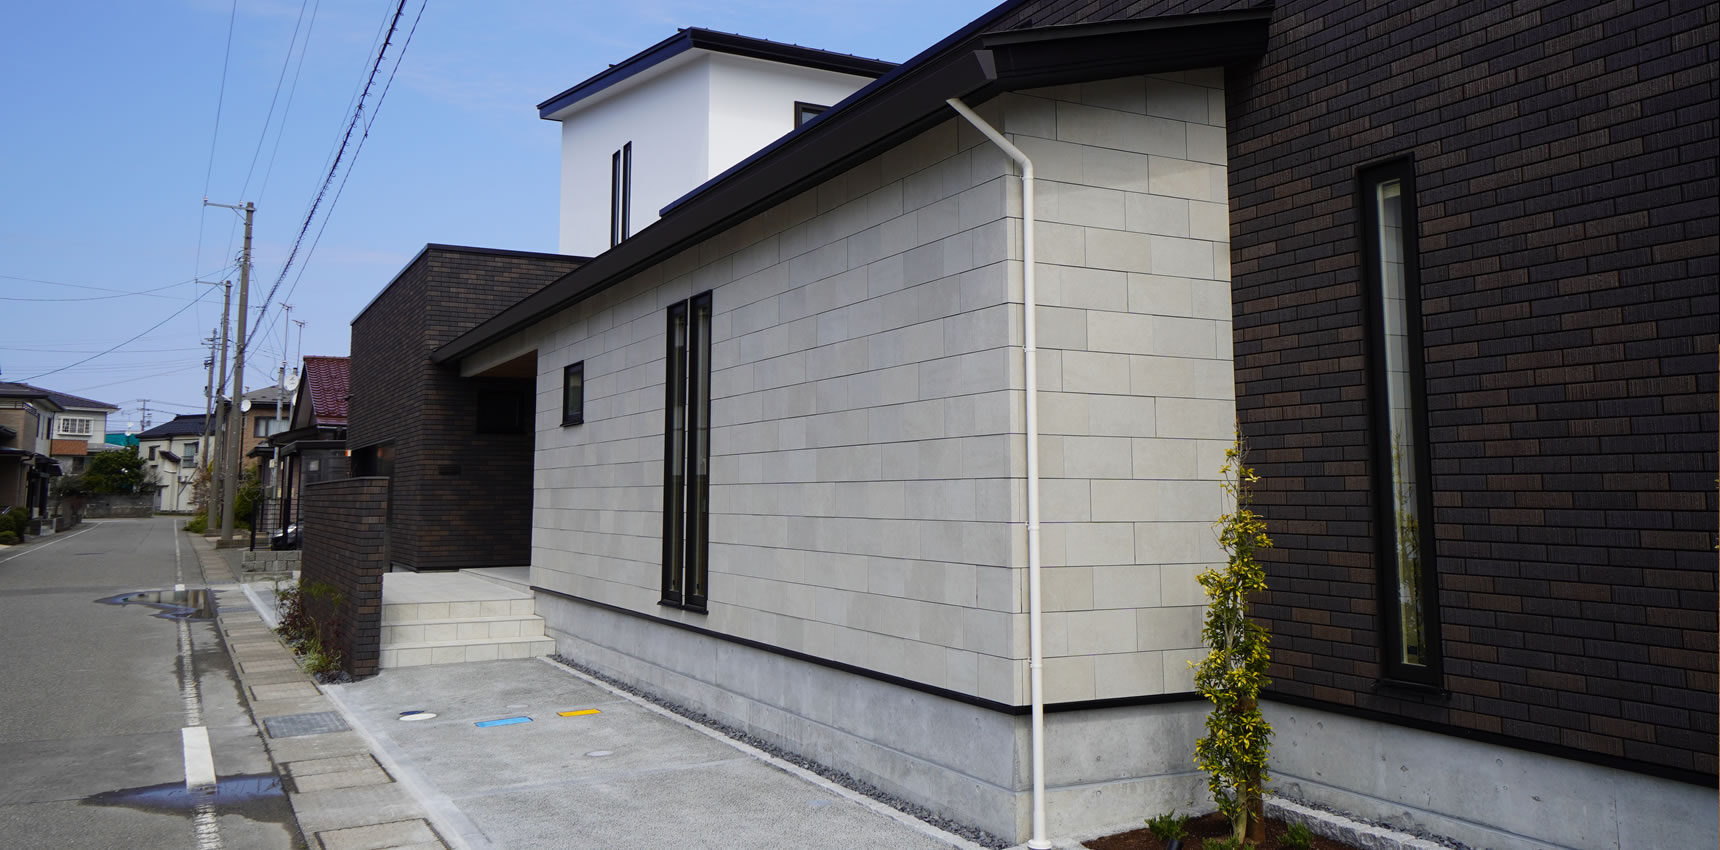 金沢市を中心に石川・富山・福井で活躍しているエムアート建築事務所です。注文住宅設計・店舗設計・医院設計などの建築設計をお考えでしたら一度ご相談ください。